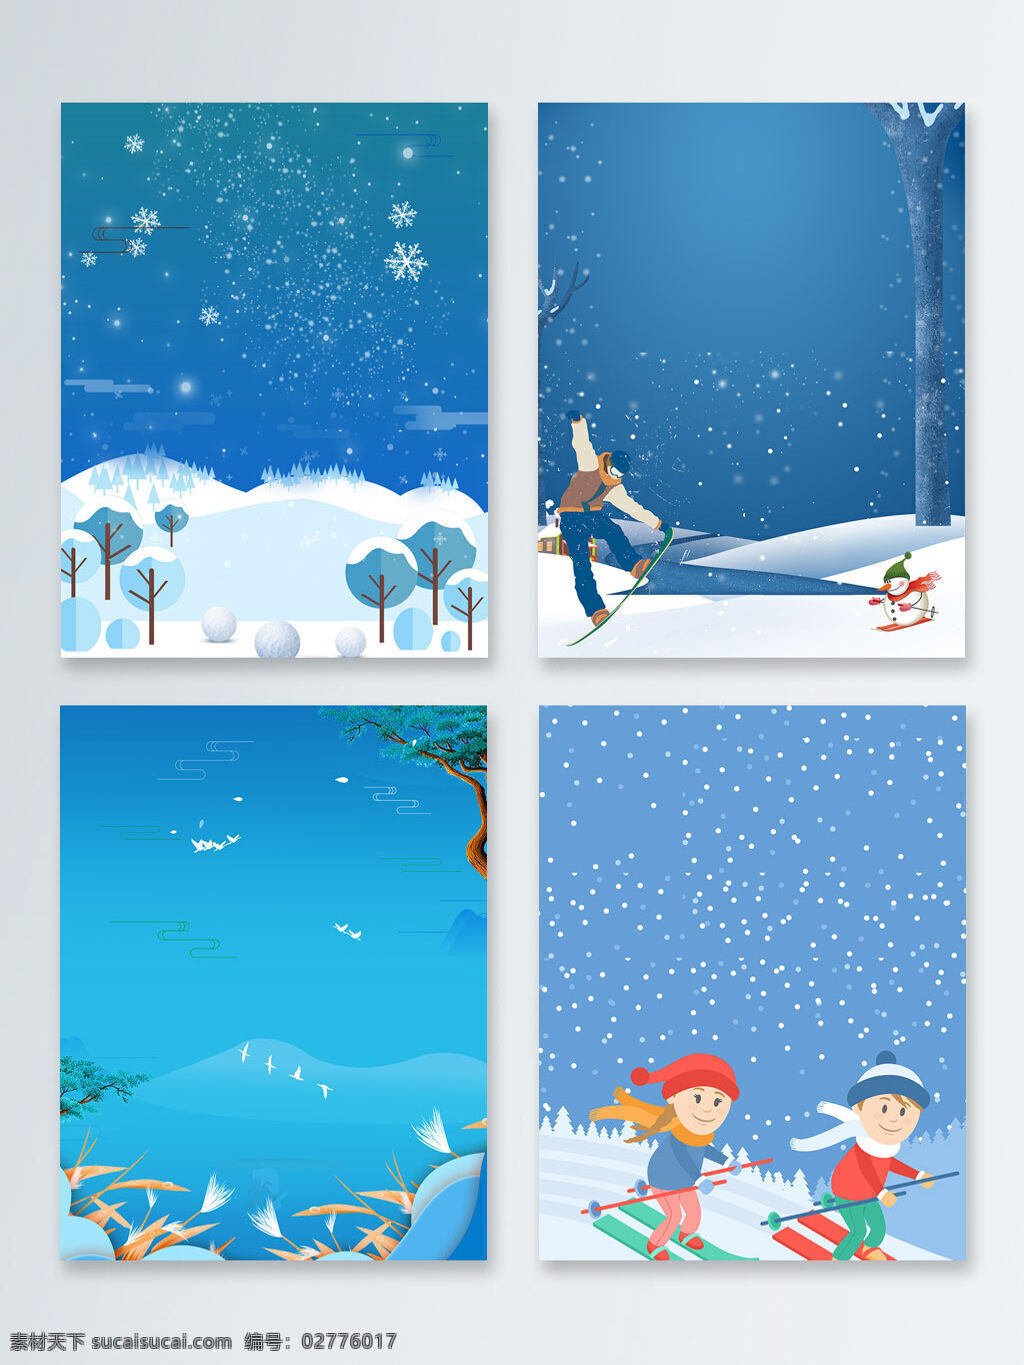 滑雪 卡通 冬天 冬季 节气 大雪 广告 背景 卡通人物 蓝色 雪花 立冬 小雪 入冬 下雪 手绘 广告背景